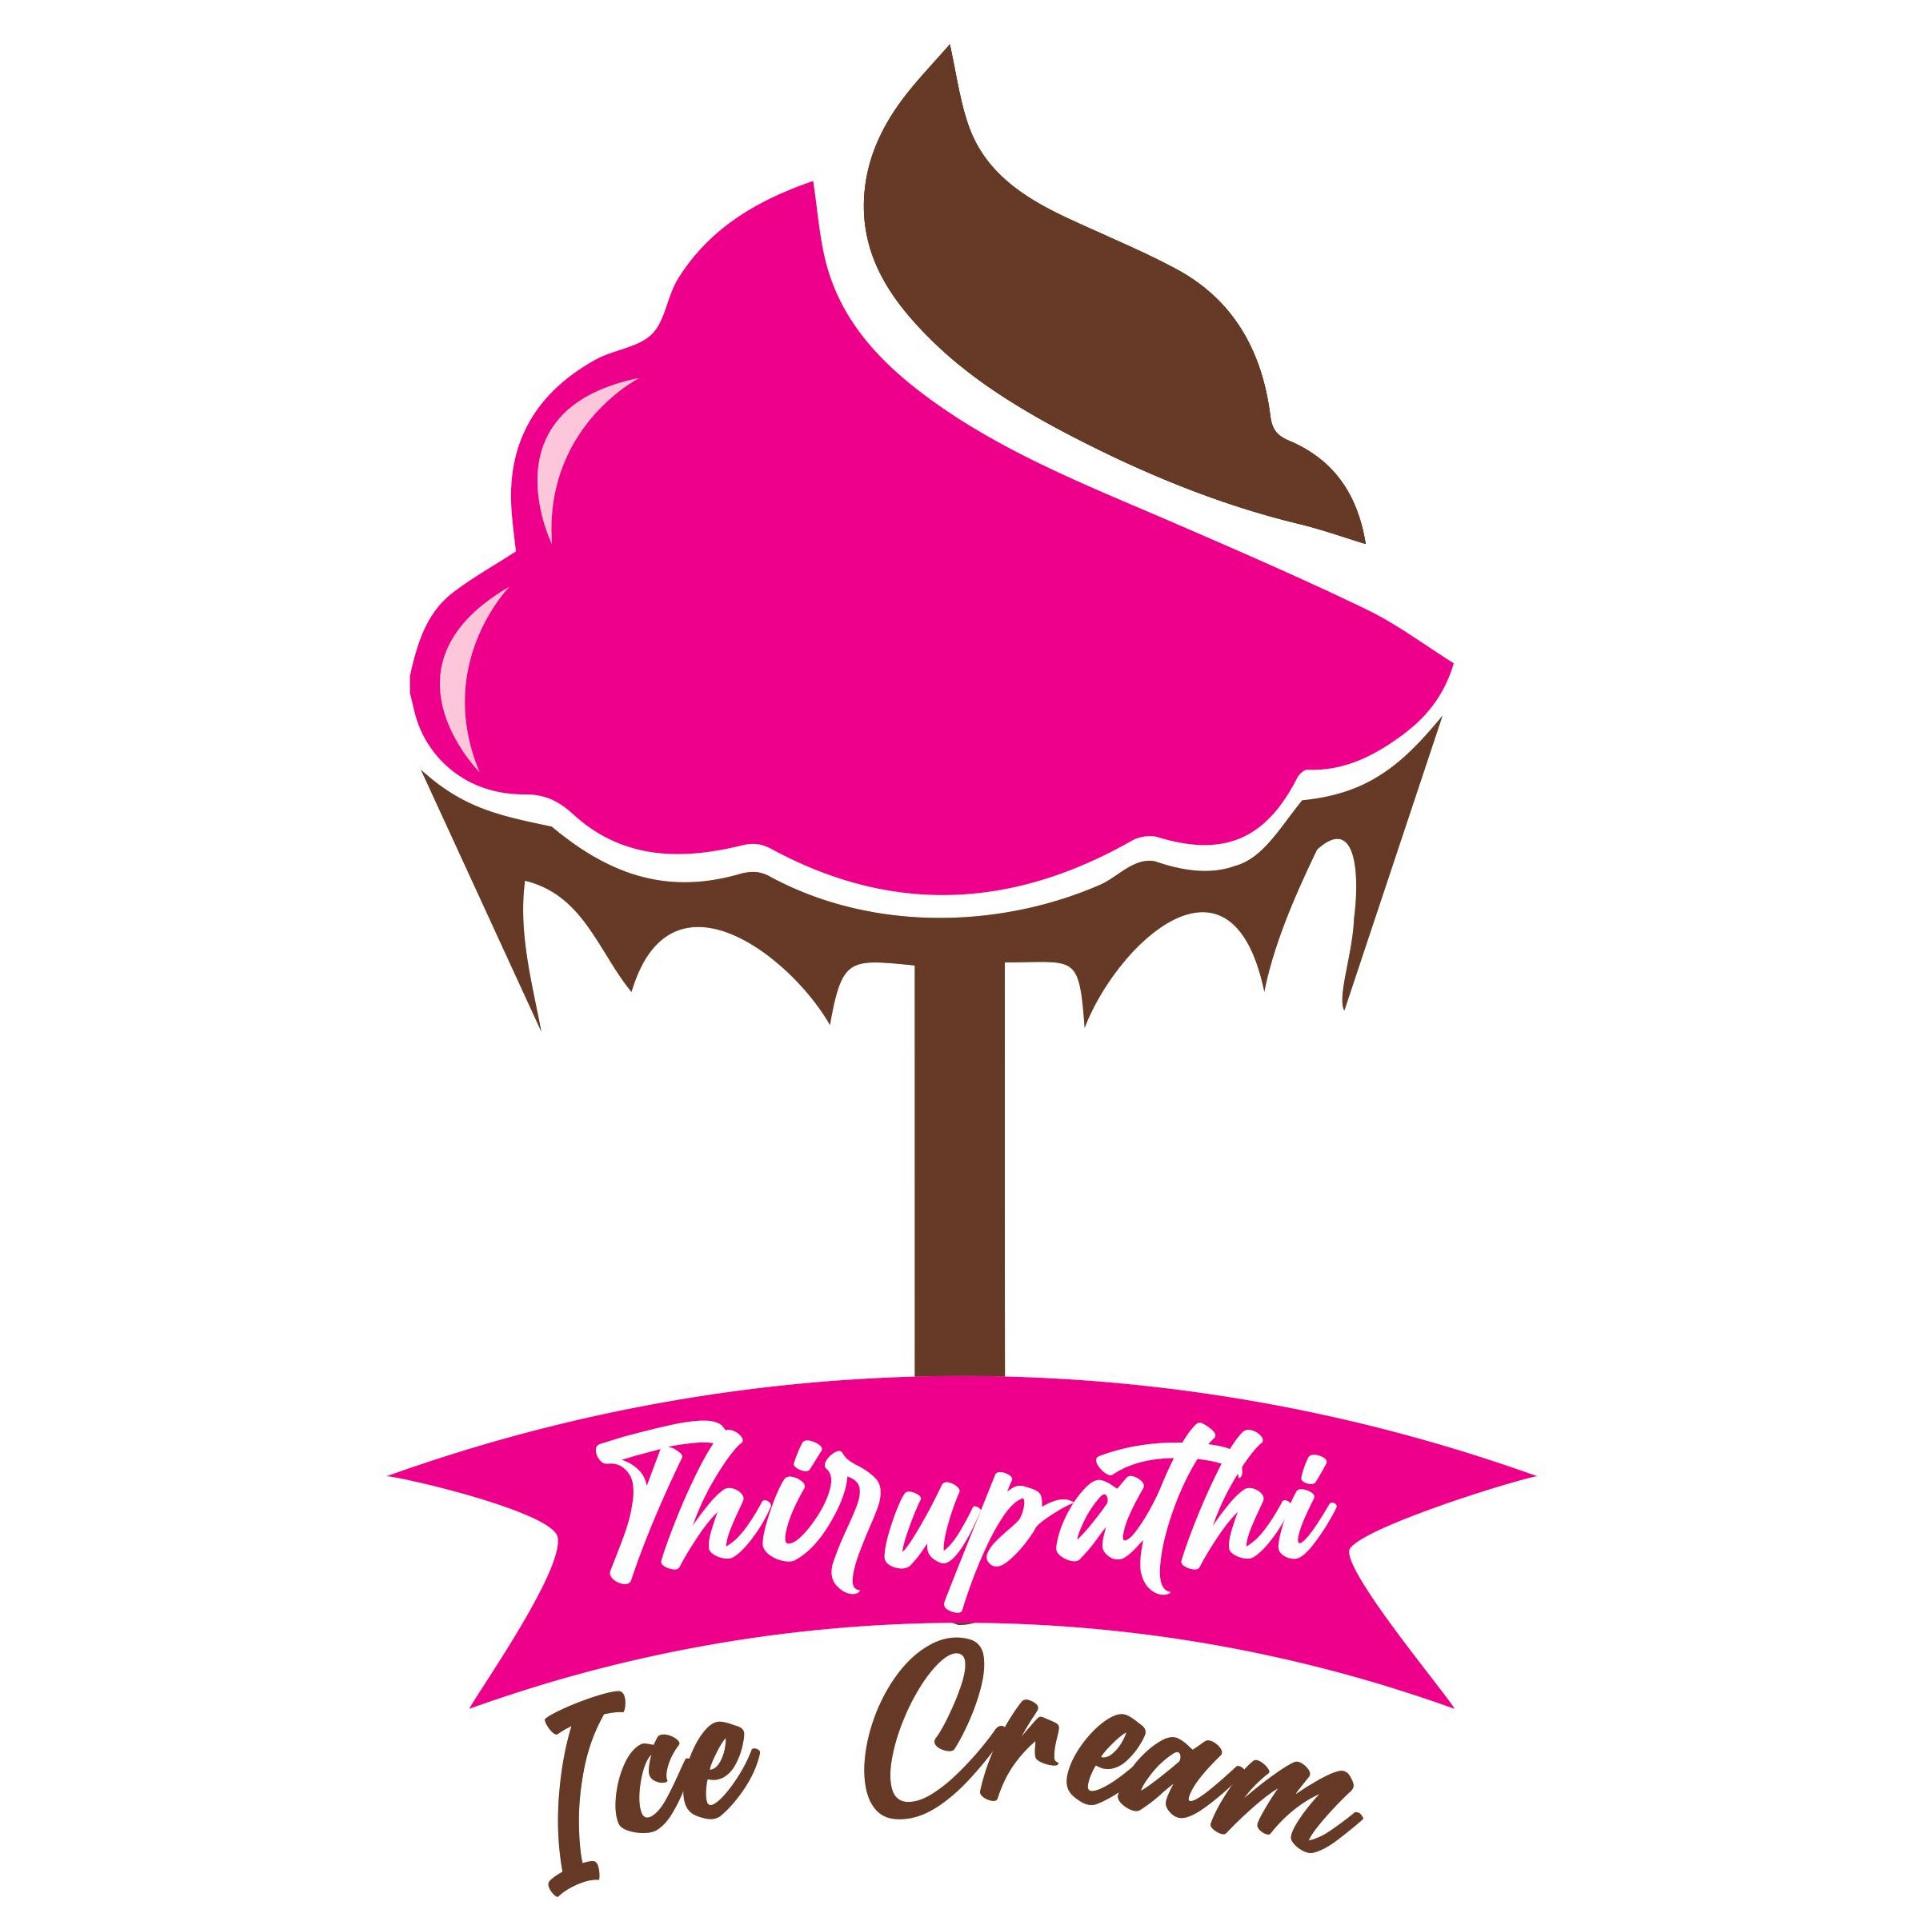 Premium Vector | Ice cream brand logo design template